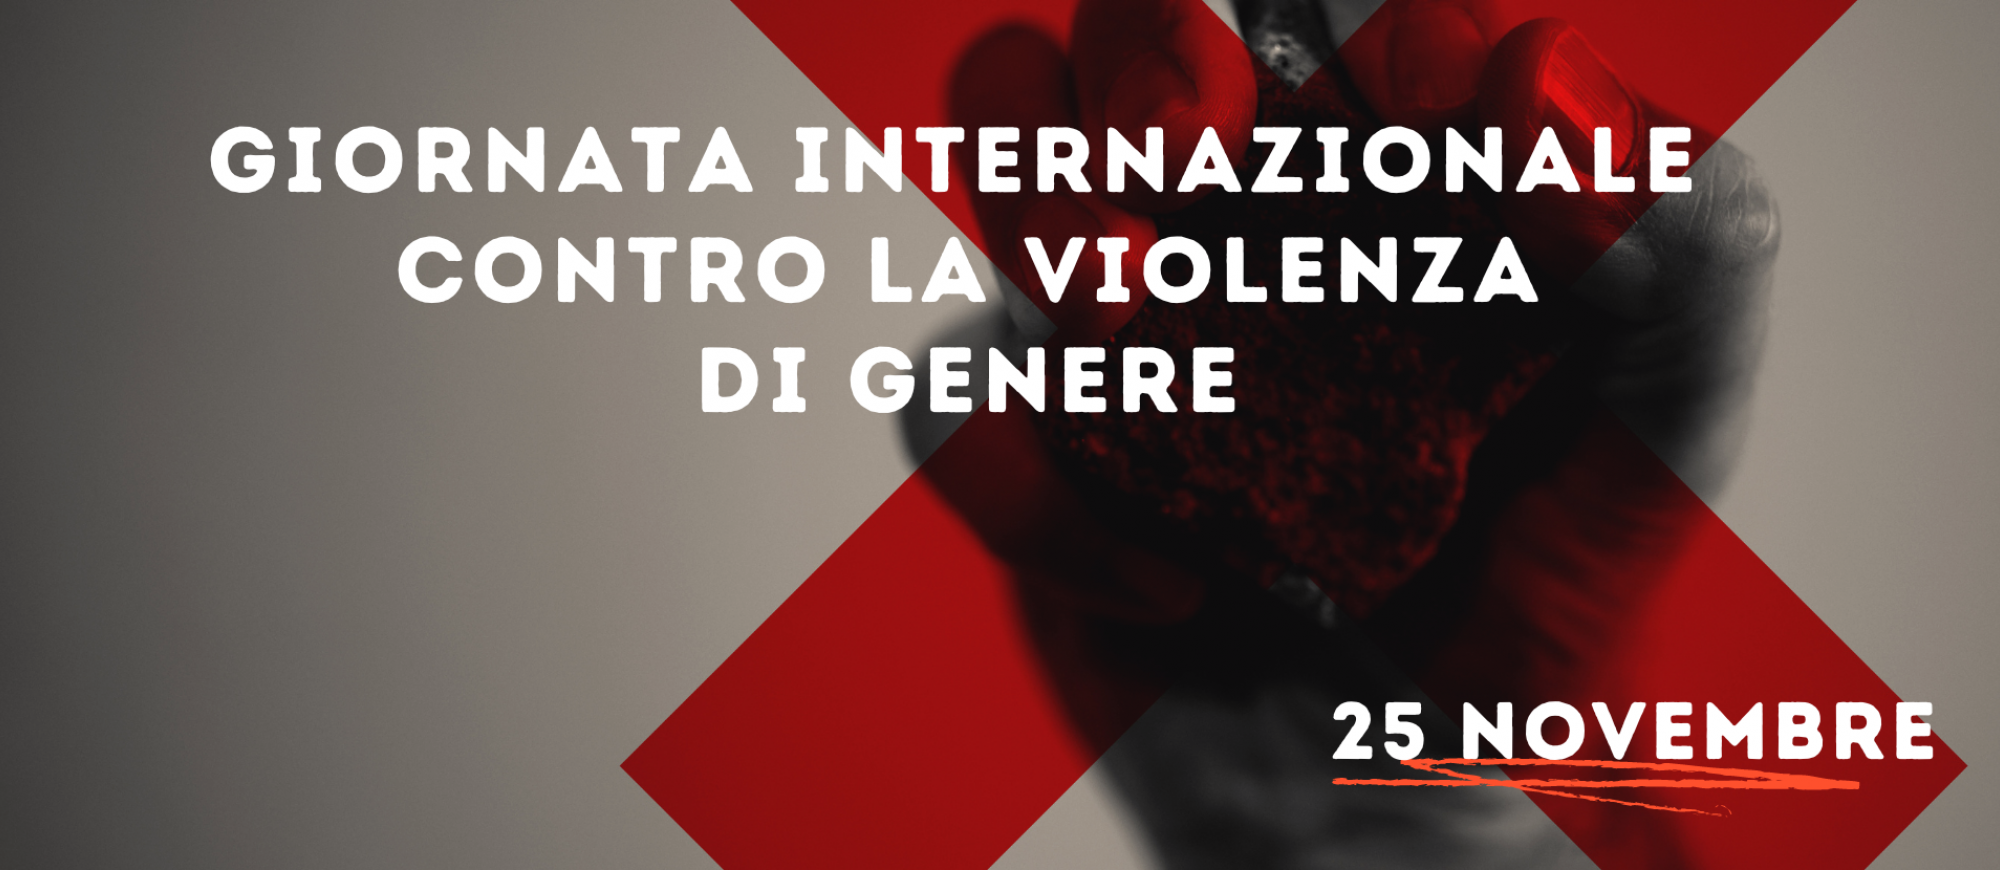 giornata internazionale contro la violenza di genere